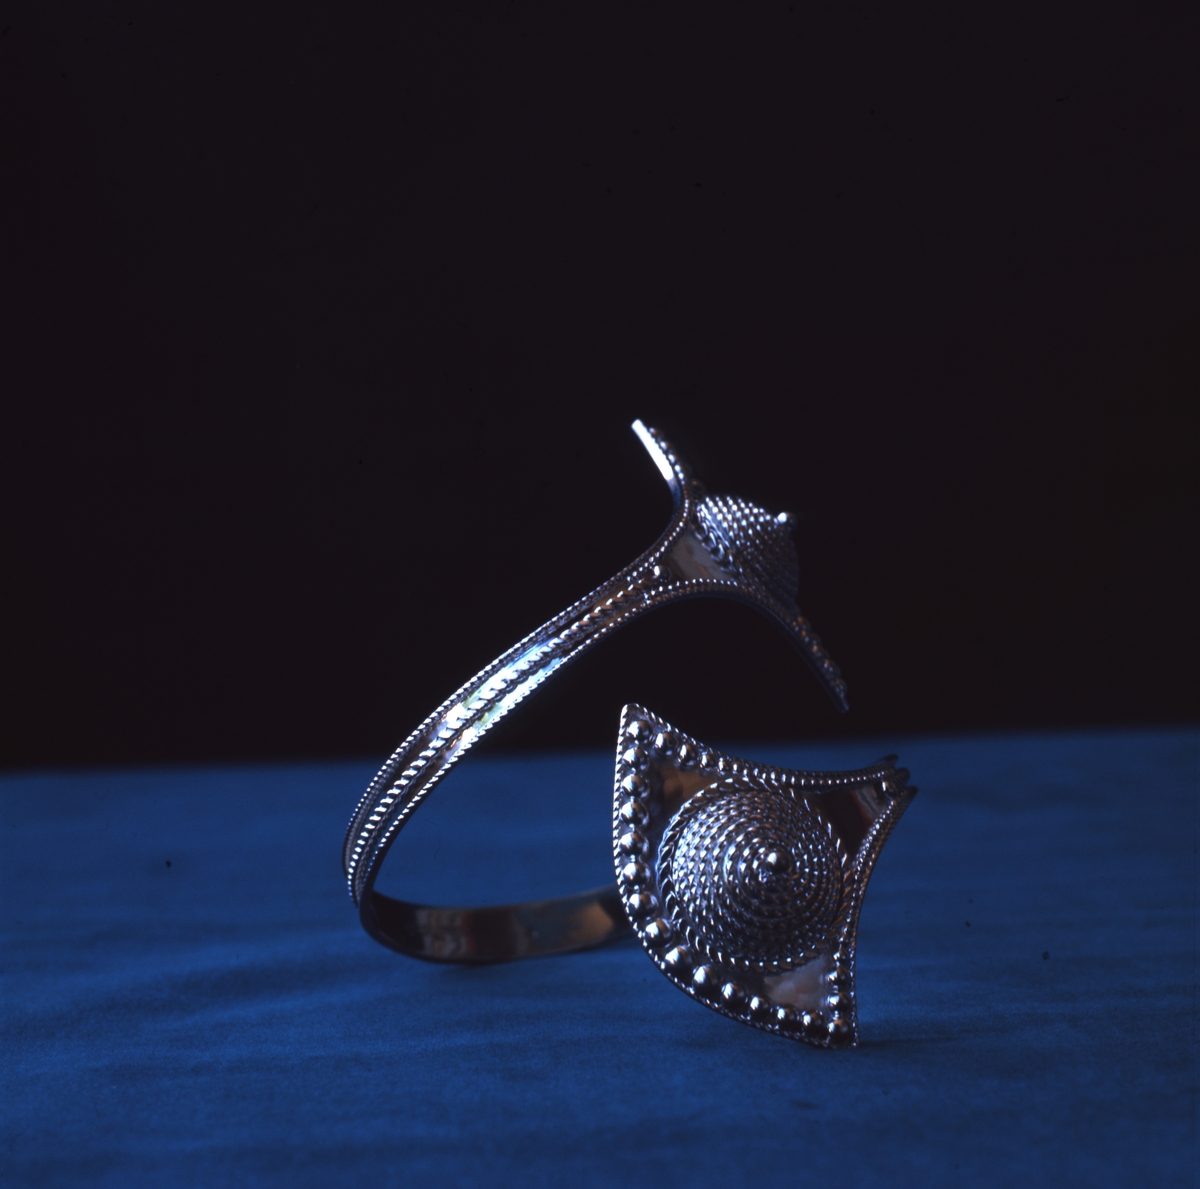 Silverarmband "Towhér" av Rosa Taikon. Armbandet är tillverkat i silverplåt dekorerat med filigran och granulering.